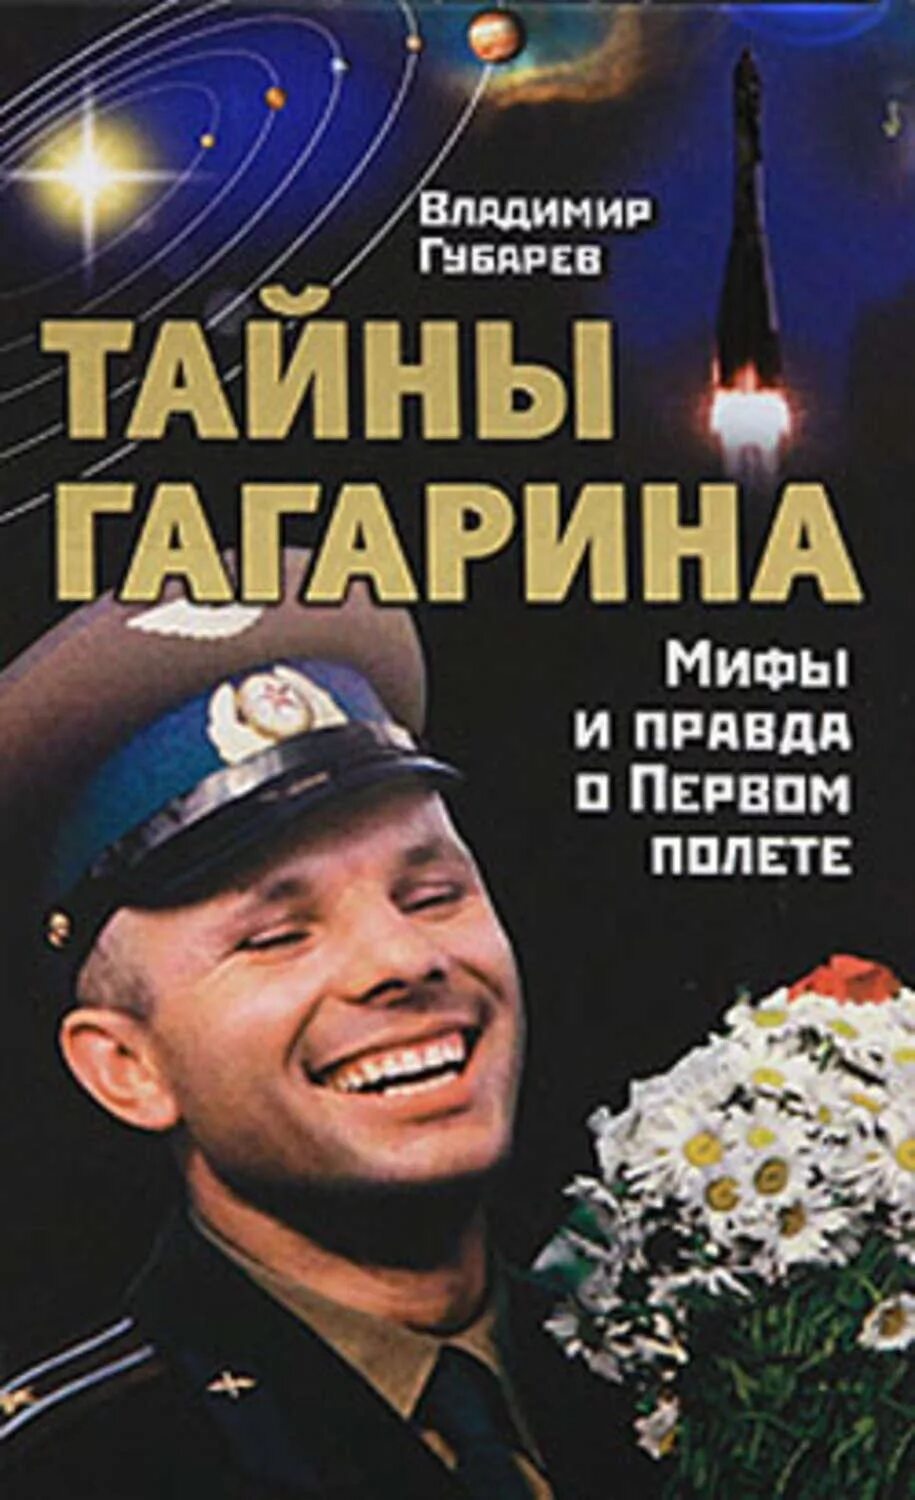 Книга первый космонавт. Книги о Гагарине.